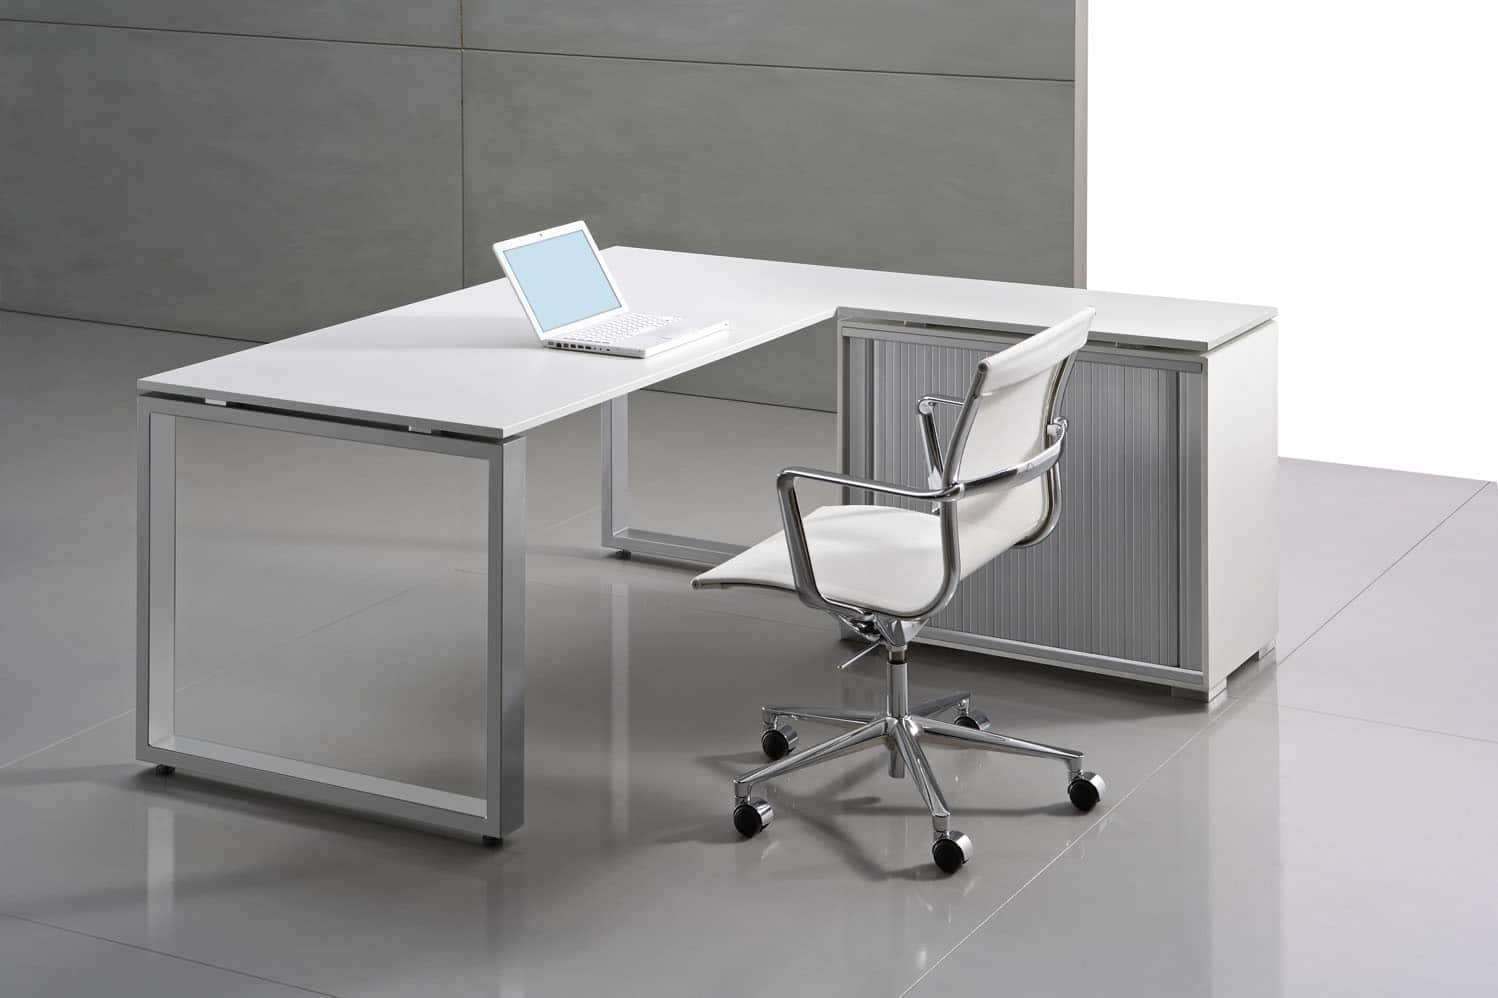 Столик для офиса. Orgspace f5141. Комплект f8801 Orgspace. Стол складной Юнисма. НСТ, стол руководителя, 1800*900*755, белое стекло, опоры хром металл.